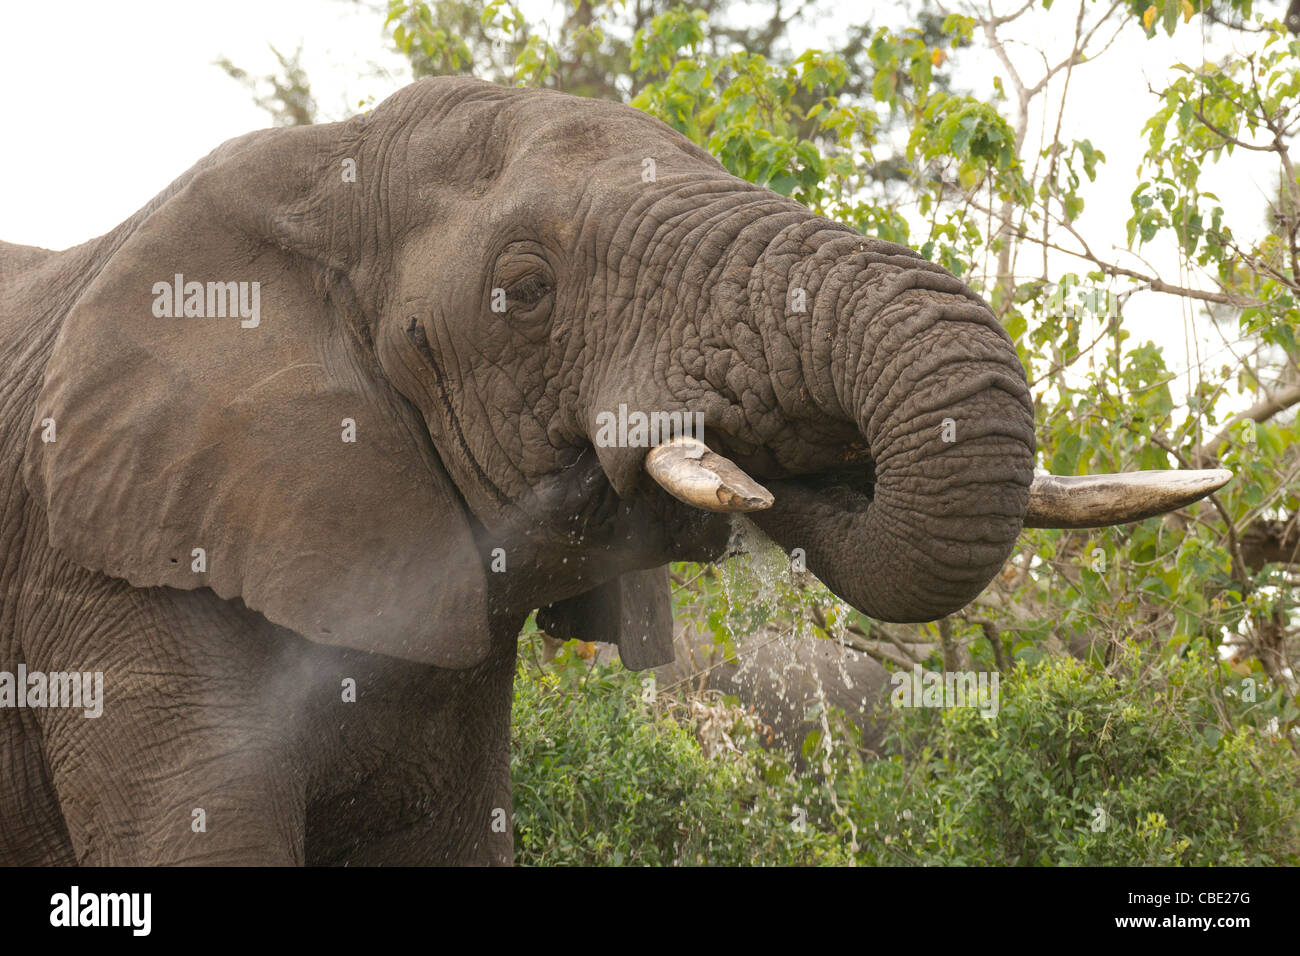 Elefante africano bebiendo una merecida bebida en el Parque Nacional Kruger en Sudáfrica. Foto de stock